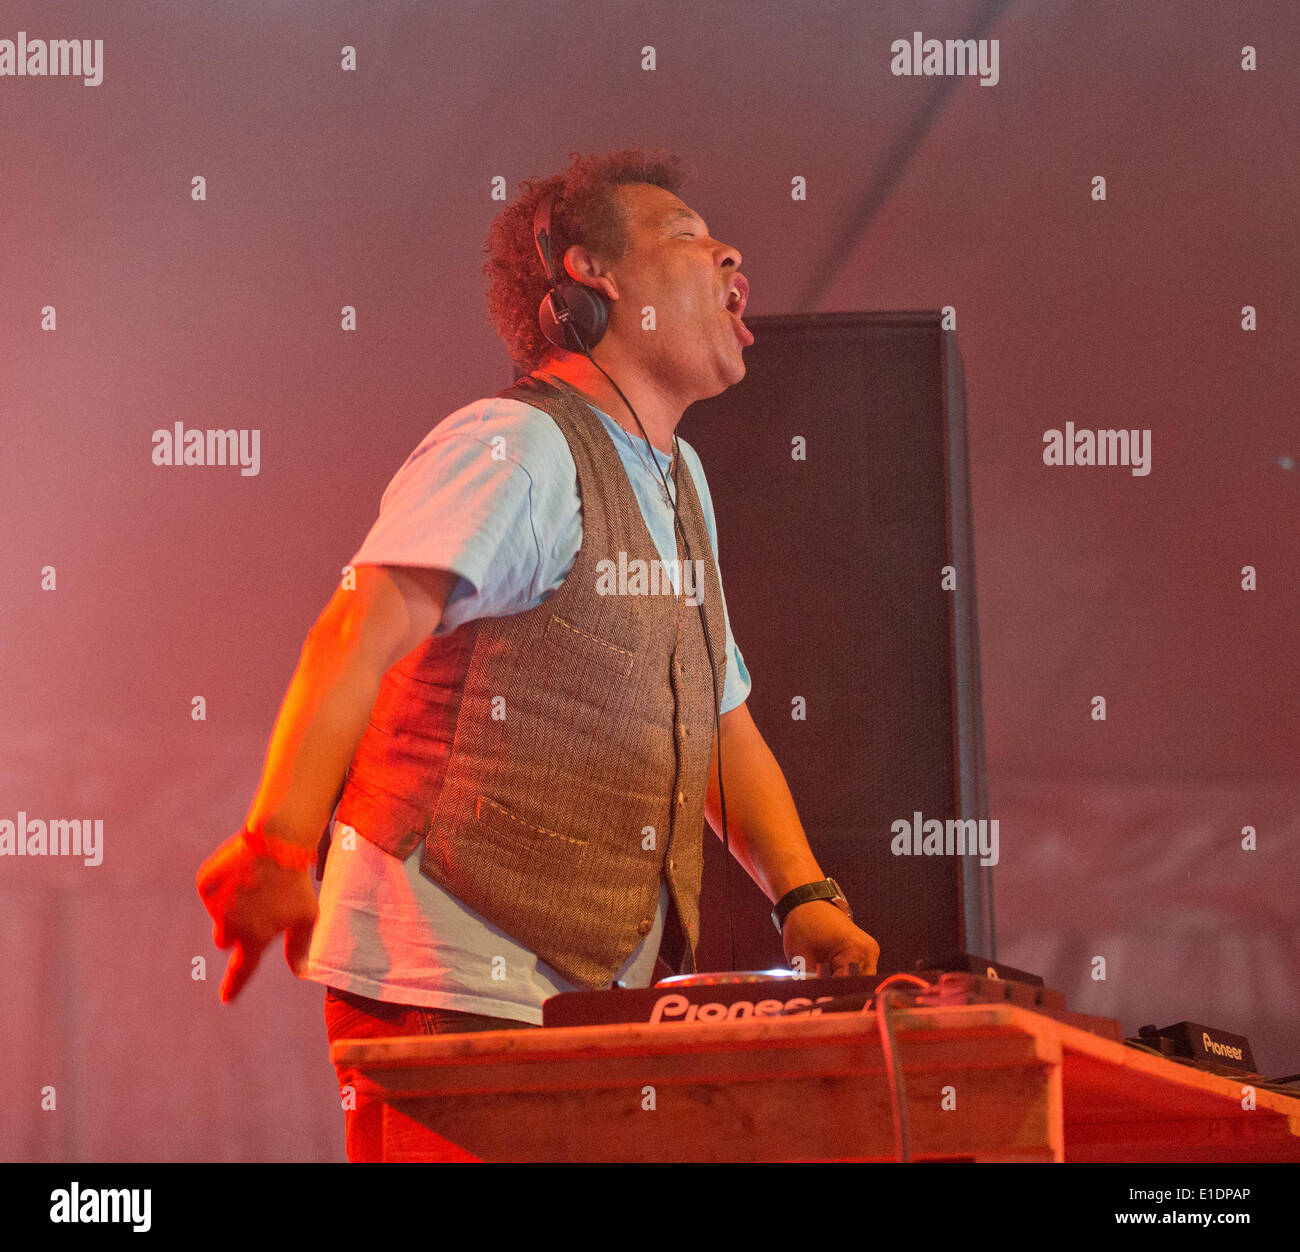 Wychwwood Festival, Cheltenham, UK. 01 Juin, 2014. Craig Charles DJs dans le Chapiteau au 10ème Festival de Cheltenham UK Wychwood Crédit : charlie bryan/Alamy Live News Banque D'Images